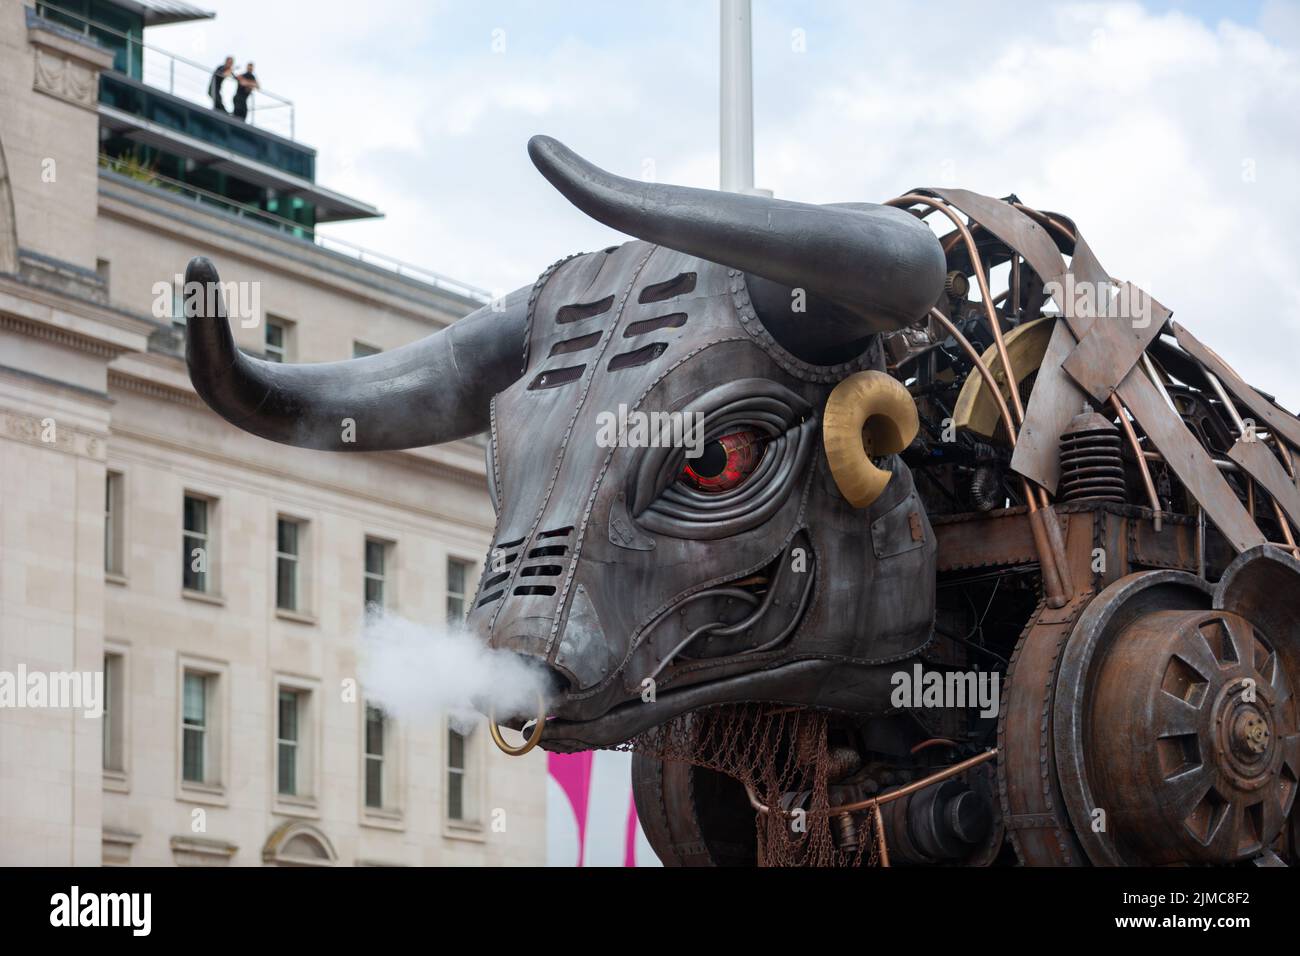 The Raging Bull - El toro mecánico de 10ft utilizado en los Juegos de la Commonwealth de Birmingham en 2022, Birmingham Reino Unido Foto de stock